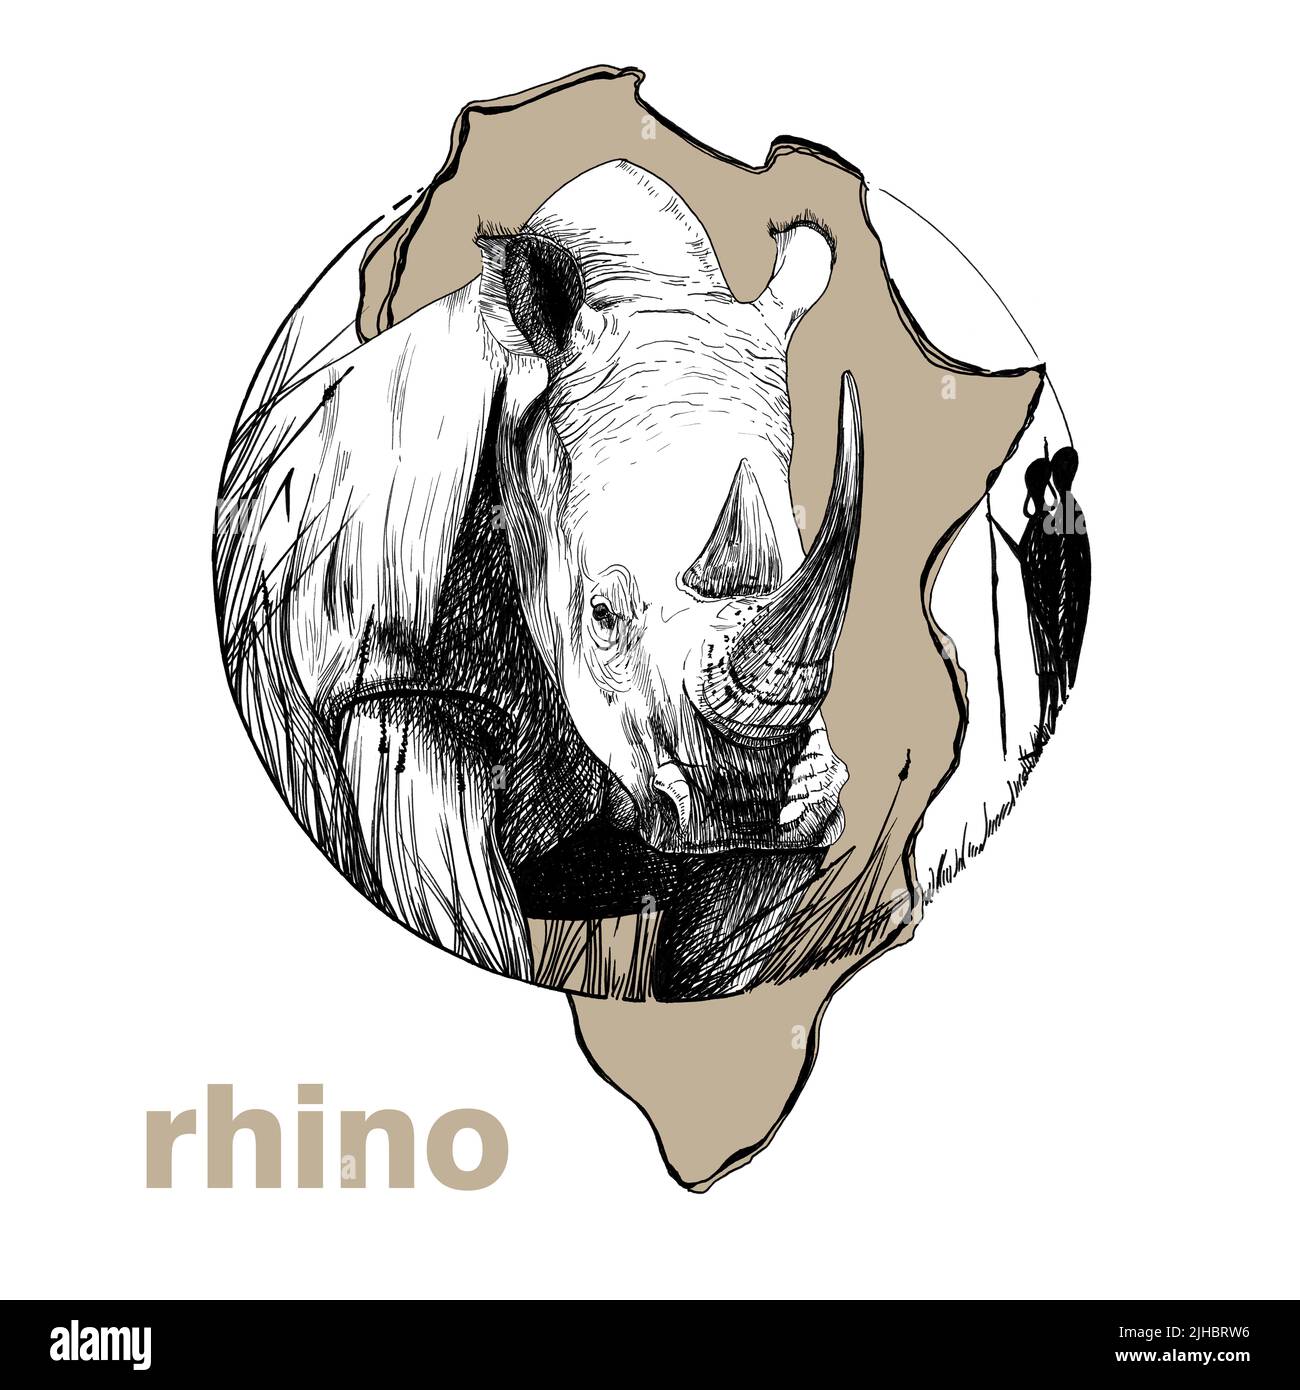 Rhinocéros dessiné à la main, illustration graphique d'esquisse sur fond blanc (originaux, pas de tracé) Banque D'Images